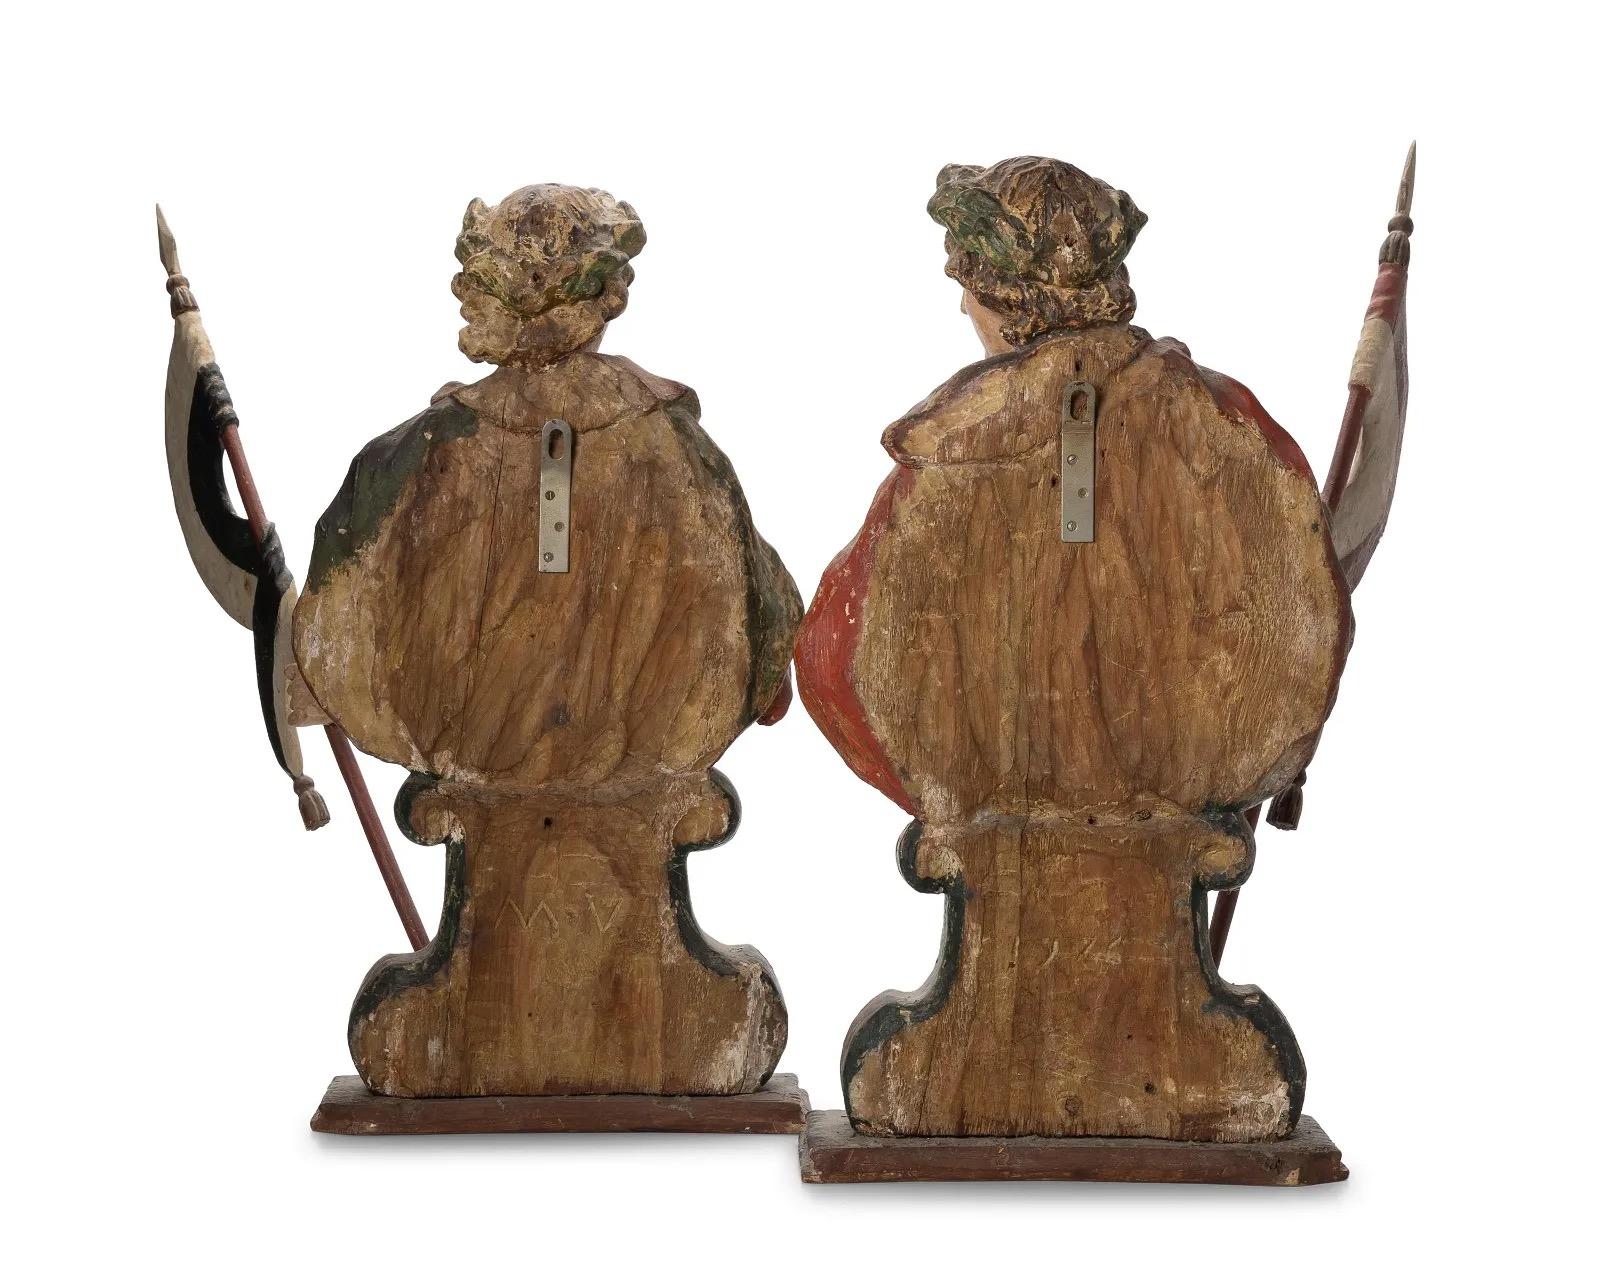 Sehen Sie sich ein fesselndes Paar handgeschnitzter Holzschätze aus dem 18. Jahrhundert an, die aus der bemerkenswerten Zeitspanne von 1717 bis 1780 stammen. Diese exquisiten Stücke zeugen von der künstlerischen Meisterschaft ihrer Epoche. Sie sind